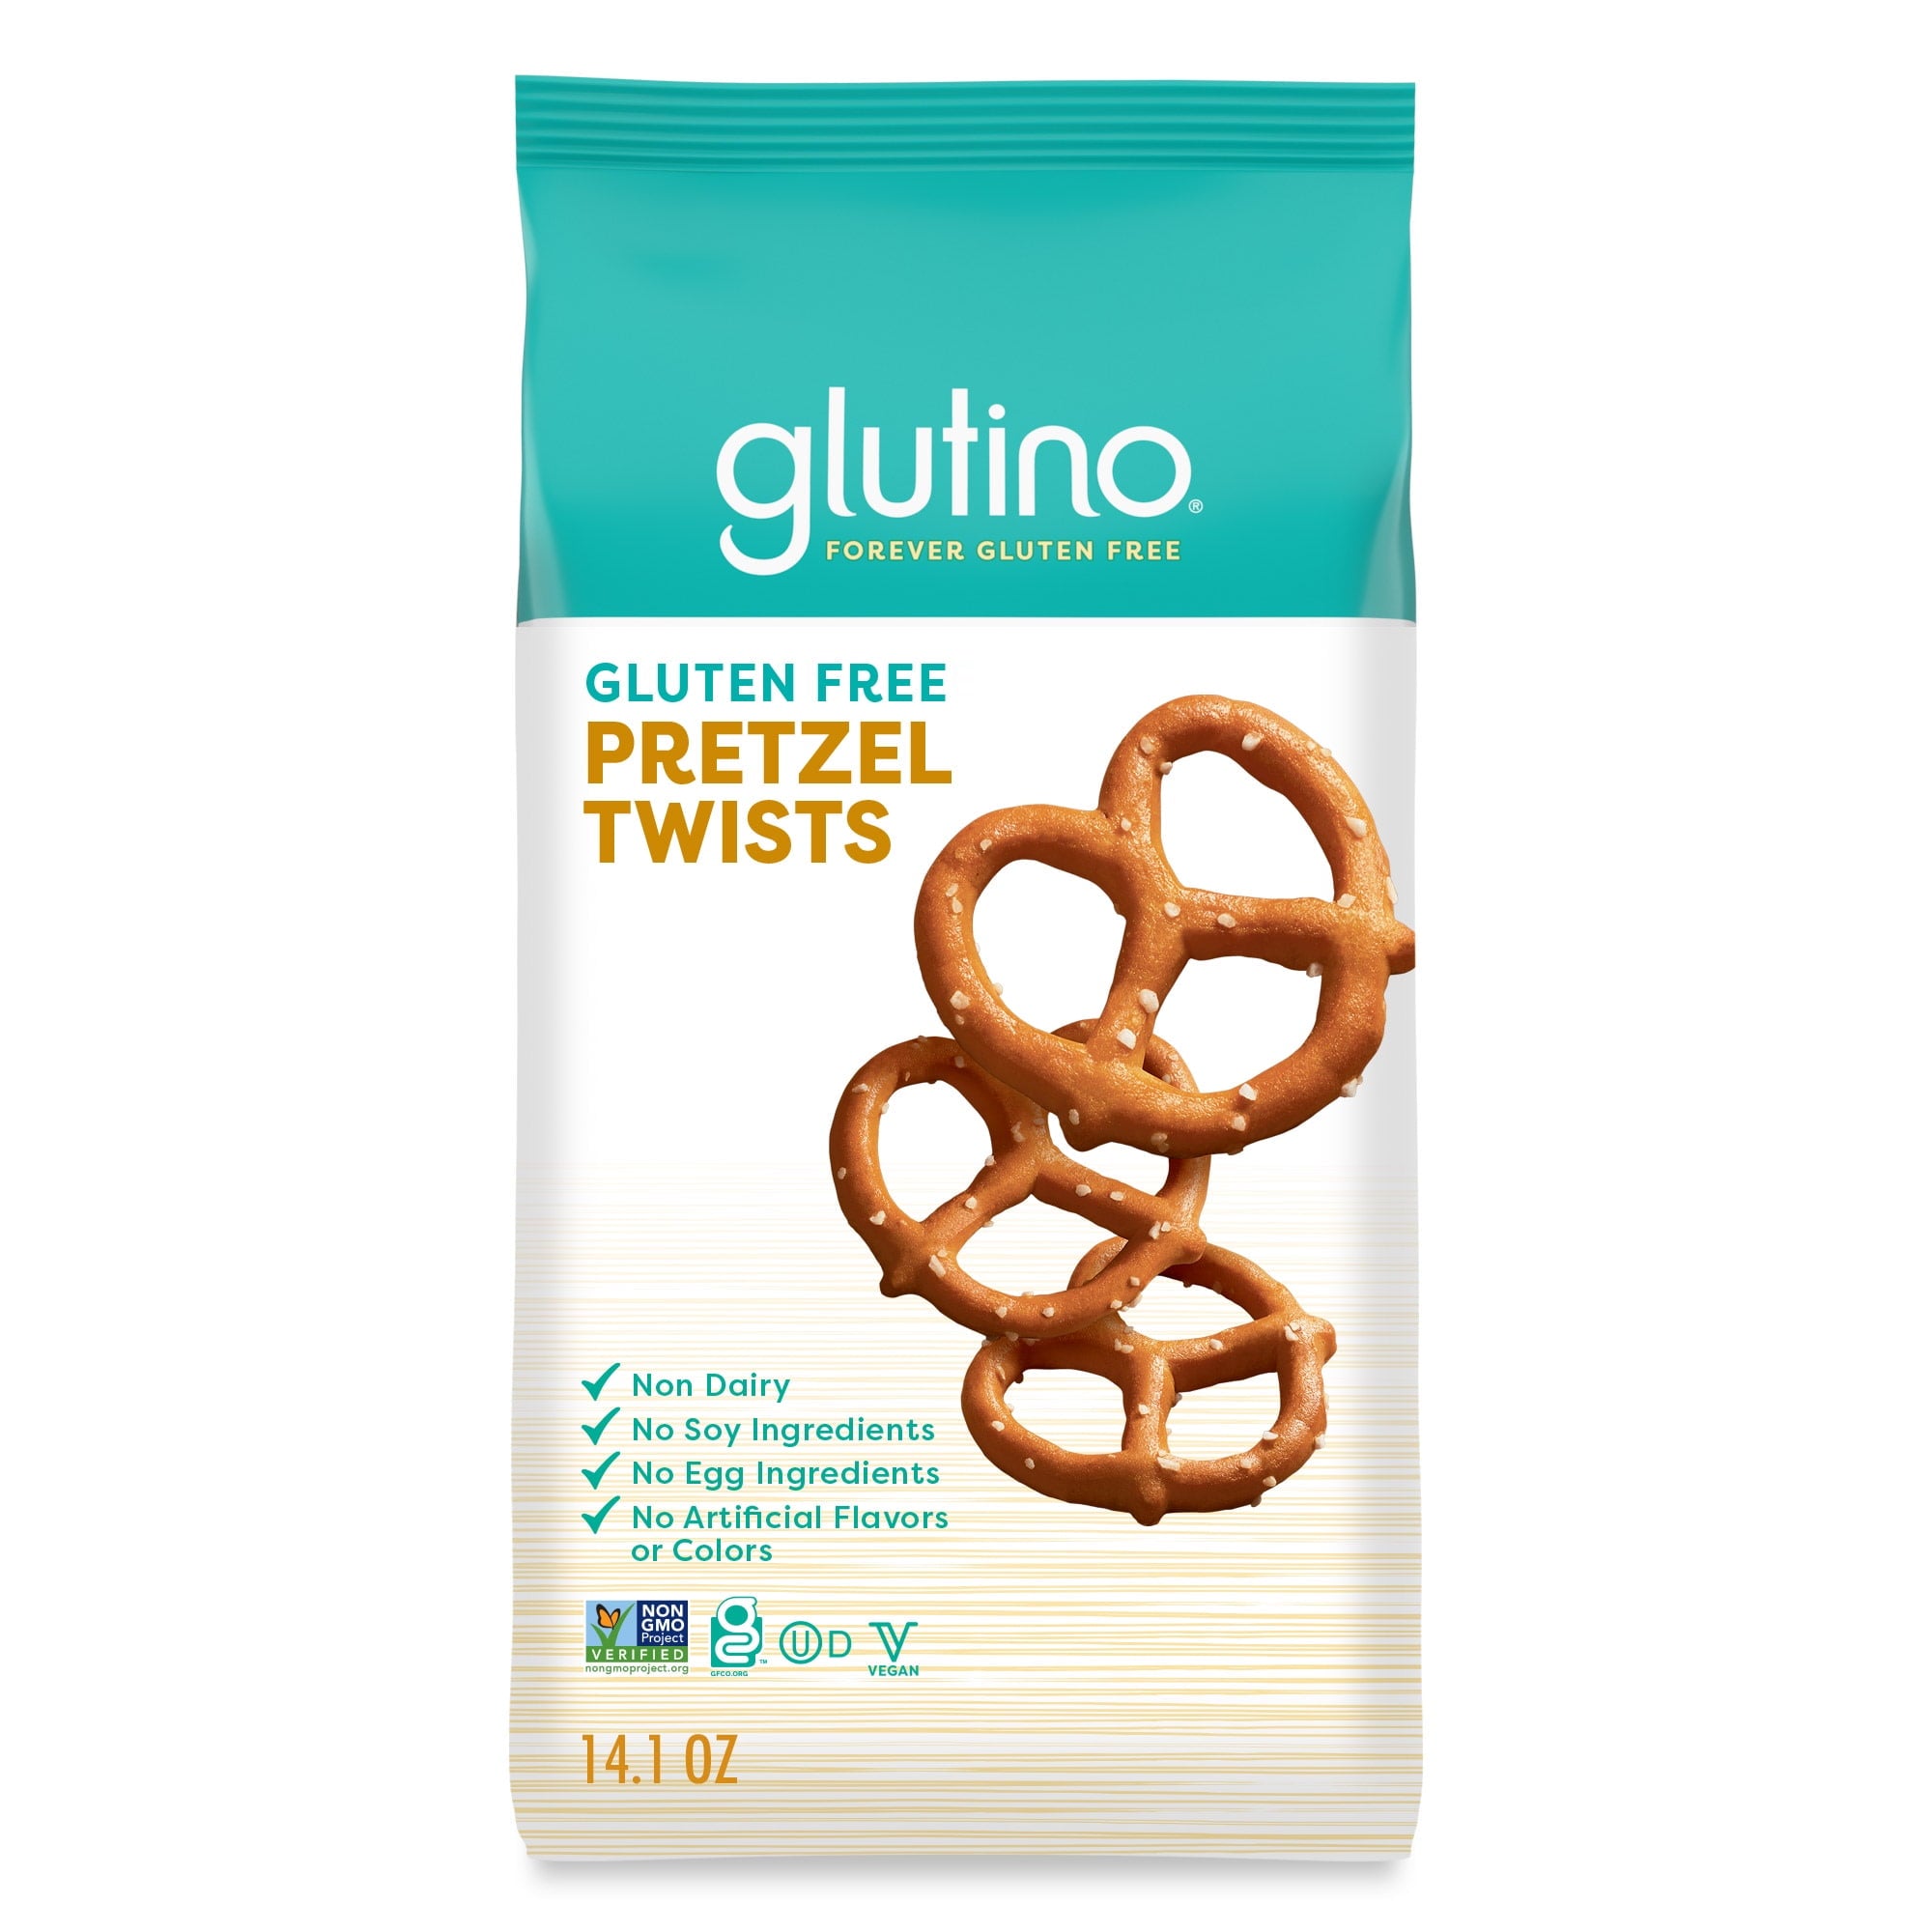 glutino Gluten Free Pretzel Twists, 400g, front of bag.